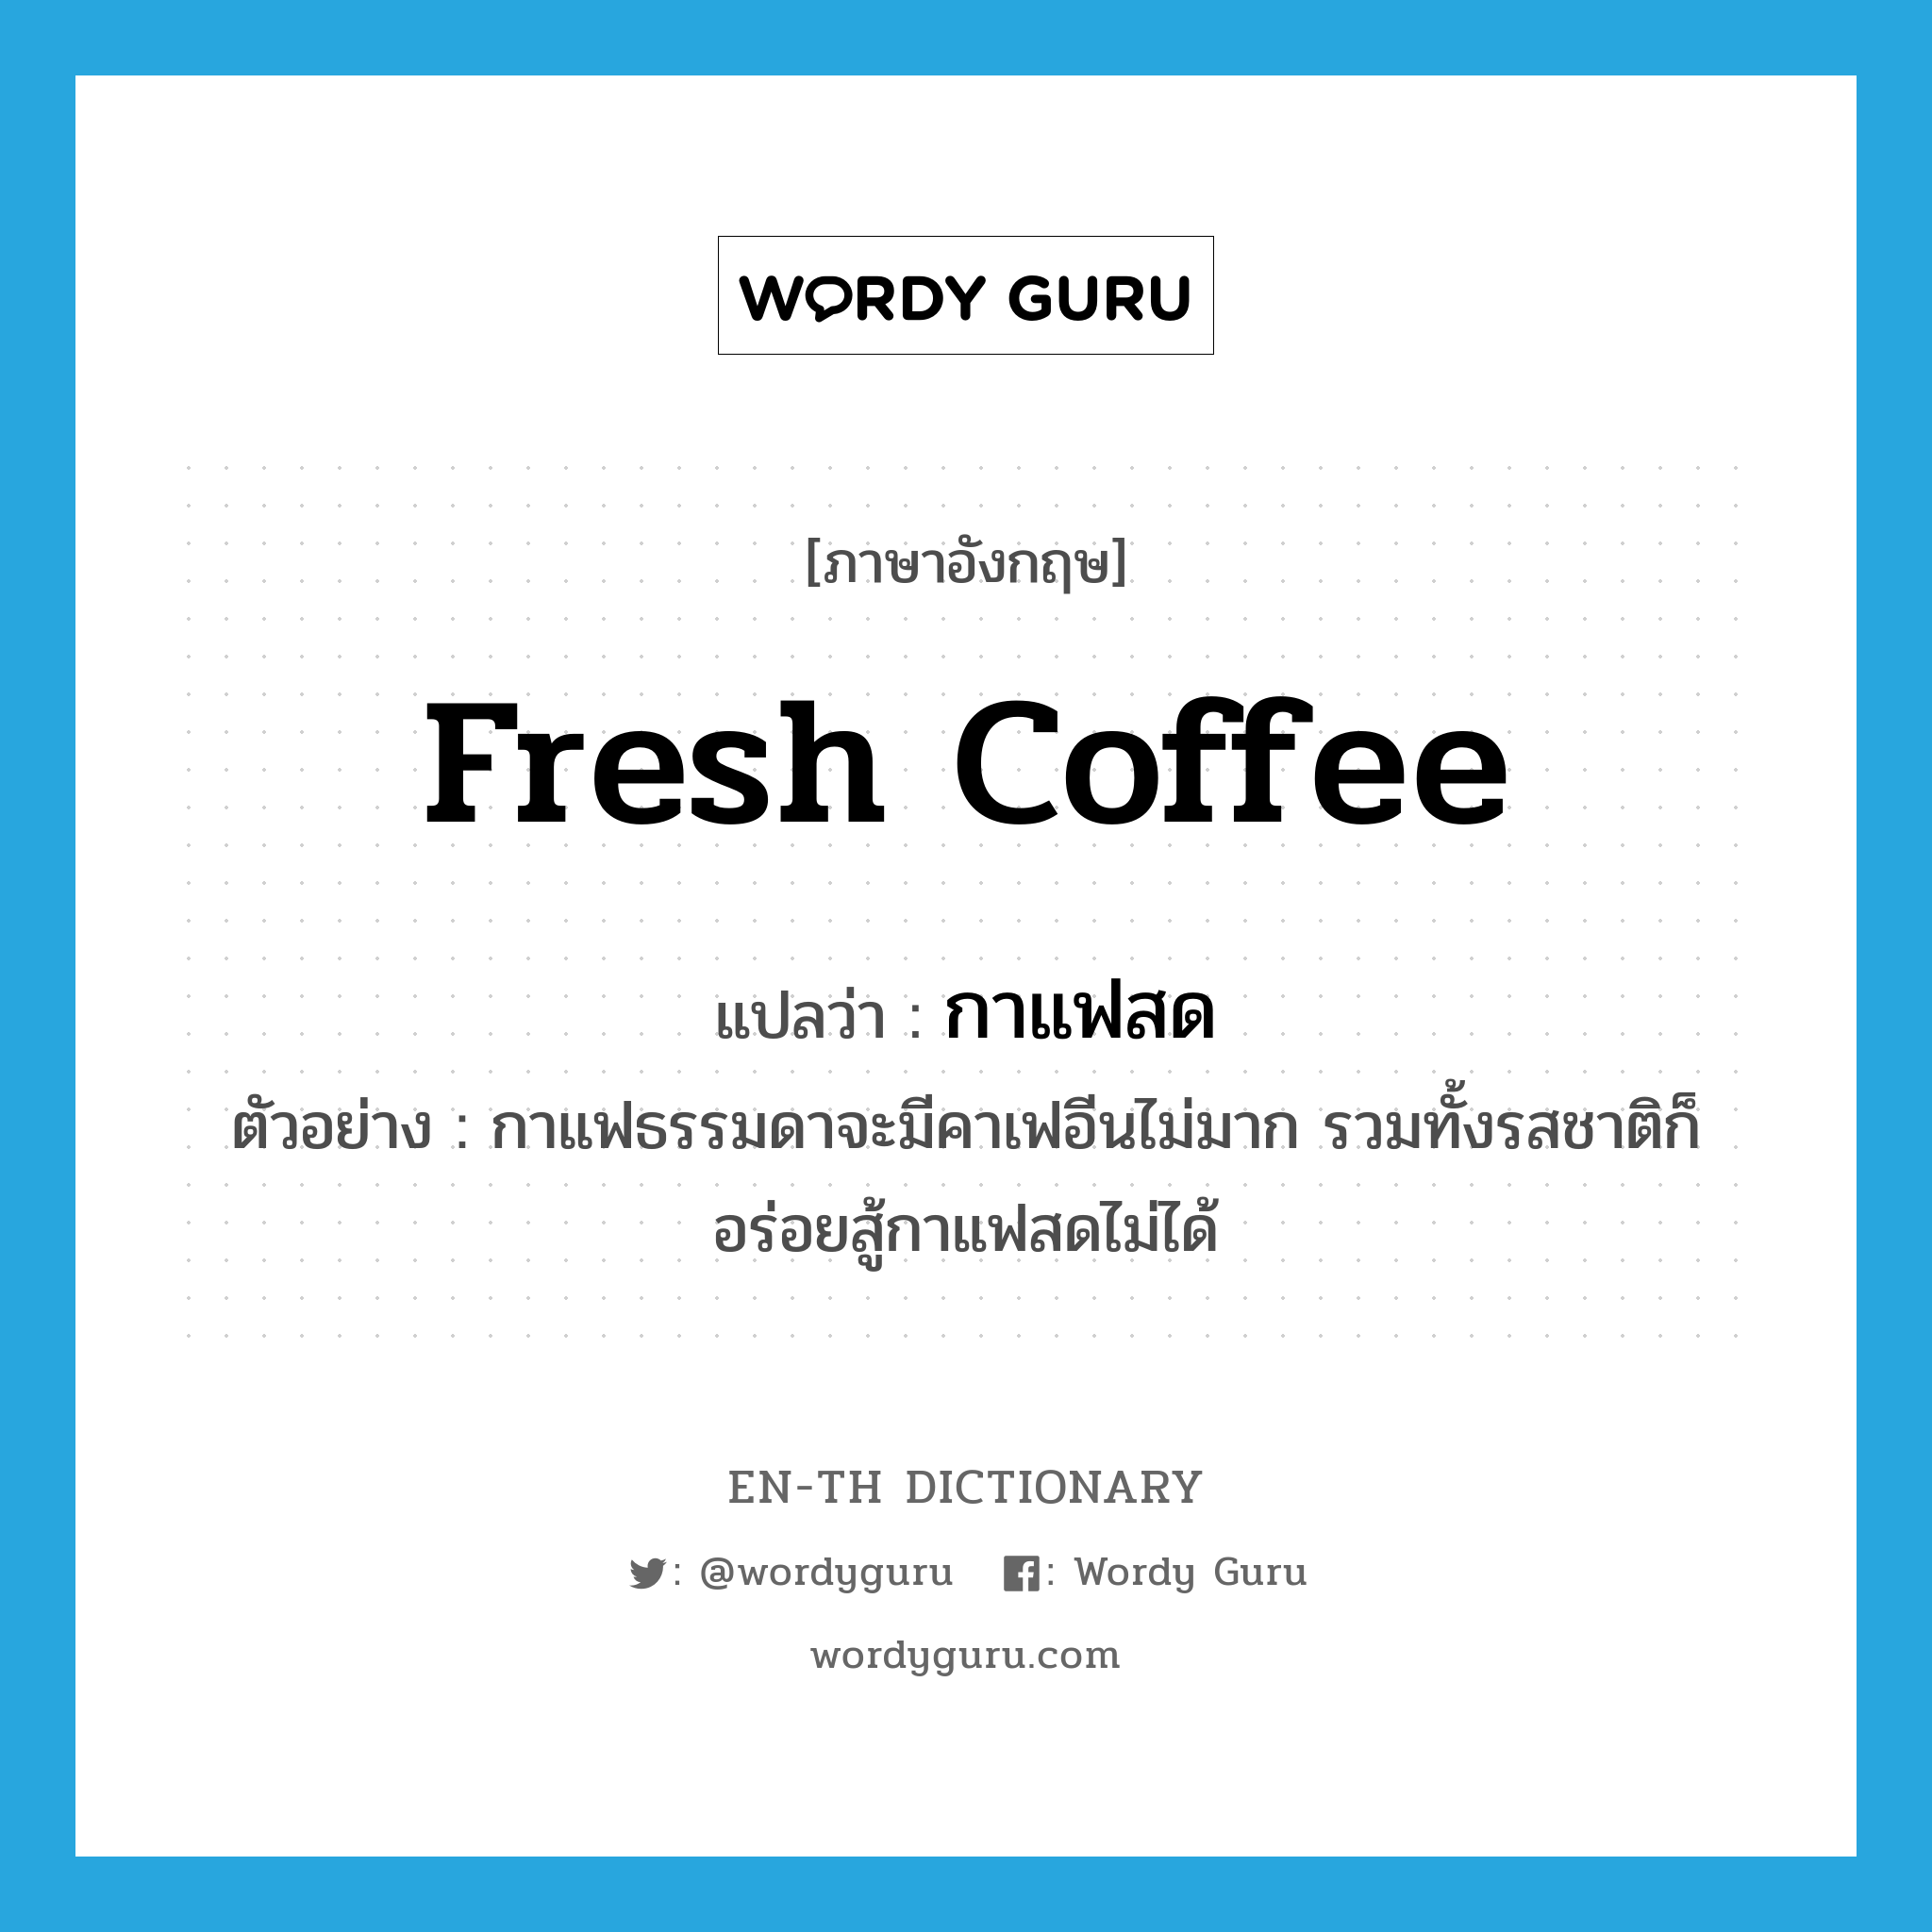 fresh coffee แปลว่า?, คำศัพท์ภาษาอังกฤษ fresh coffee แปลว่า กาแฟสด ประเภท N ตัวอย่าง กาแฟธรรมดาจะมีคาเฟอีนไม่มาก รวมทั้งรสชาติก็อร่อยสู้กาแฟสดไม่ได้ หมวด N